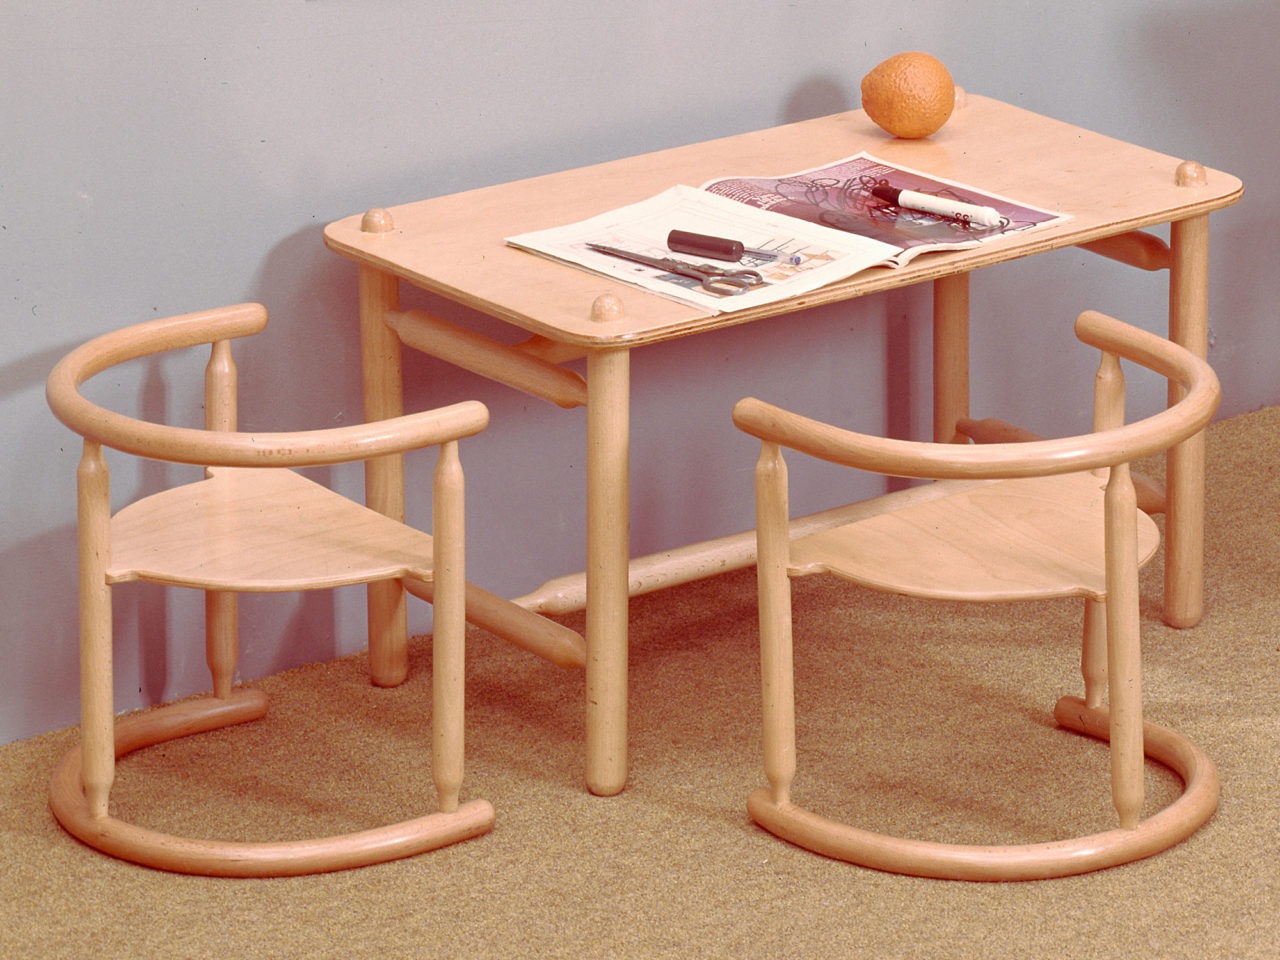 Mesa de tamaño infantil y sillas fabricadas únicamente con madera clara. Marcos y detalles de formas suaves y redondeadas.